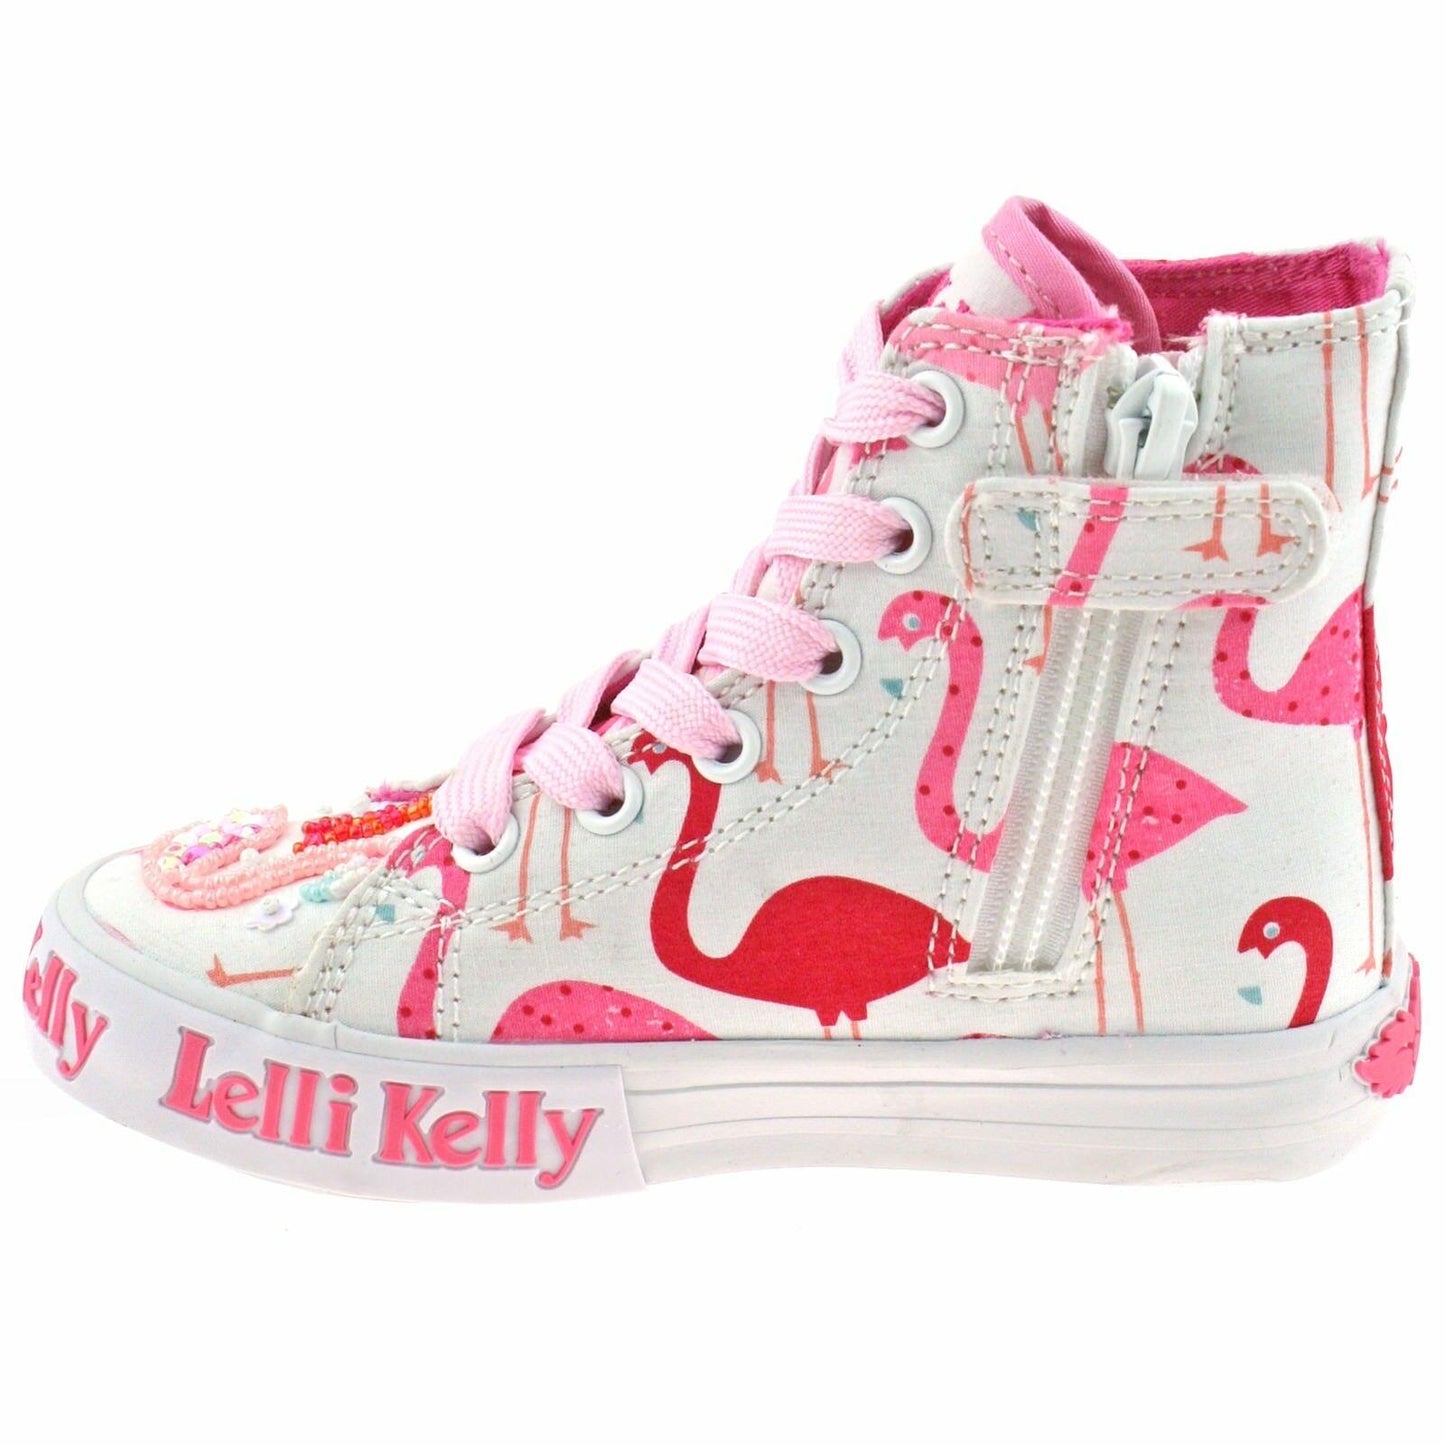 Lelli Kelly LK5090 (BA02) White Fantasy Flamingo Canvas Baseball Boots